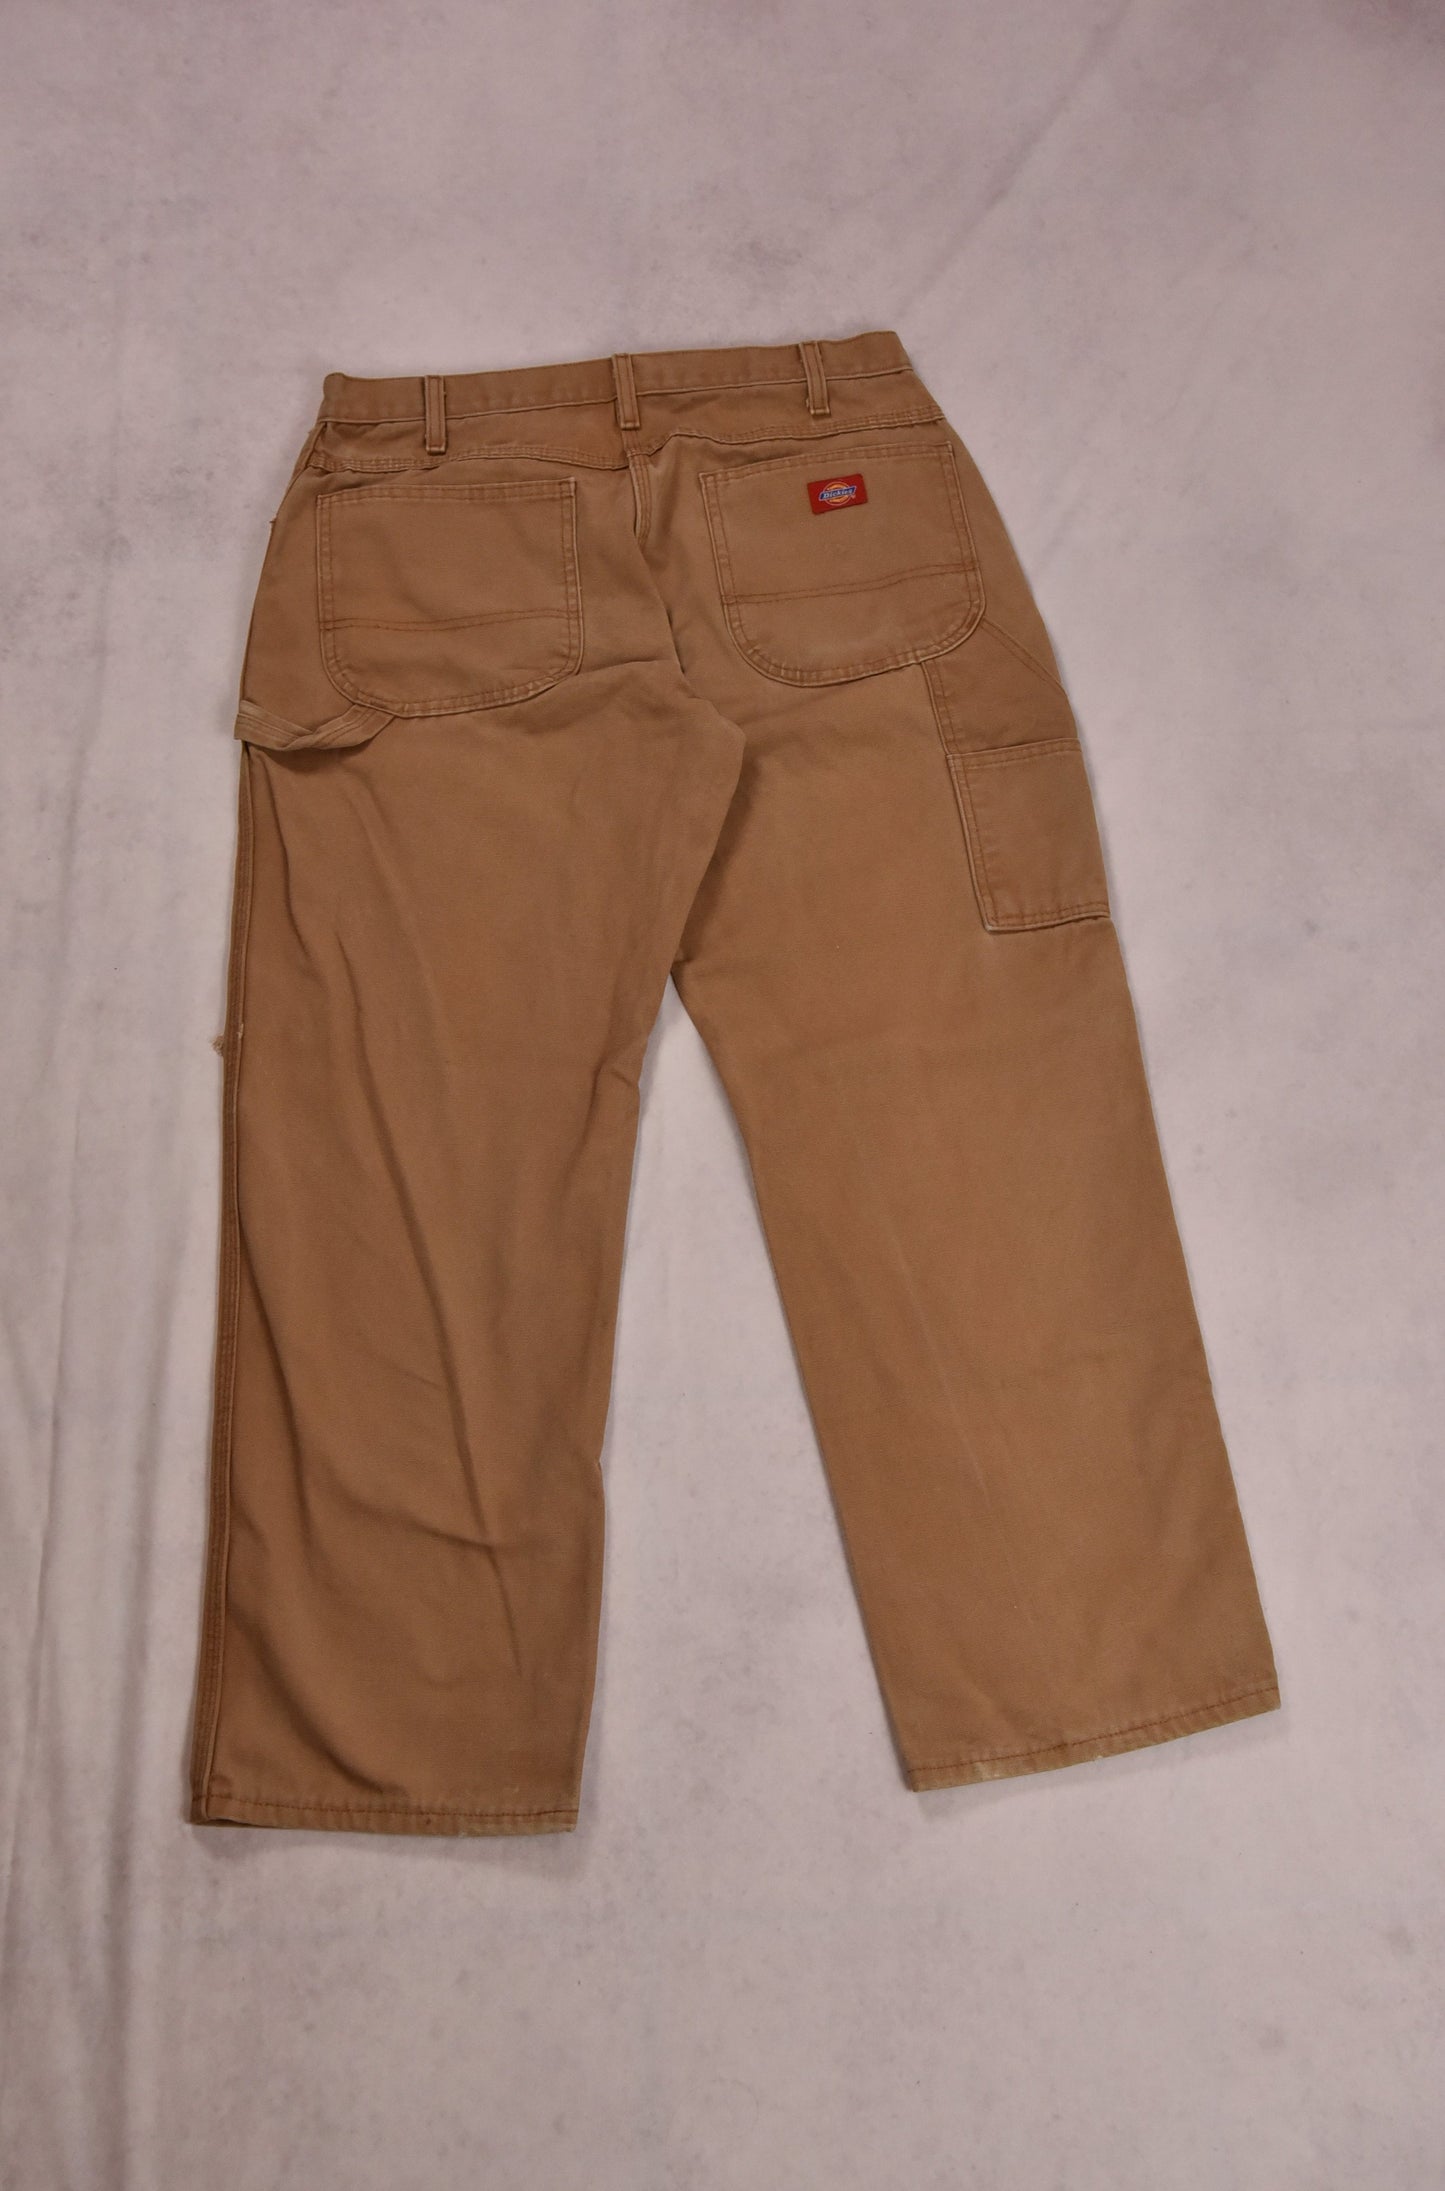 Dickies Workwear Pants Vintage / 34x30